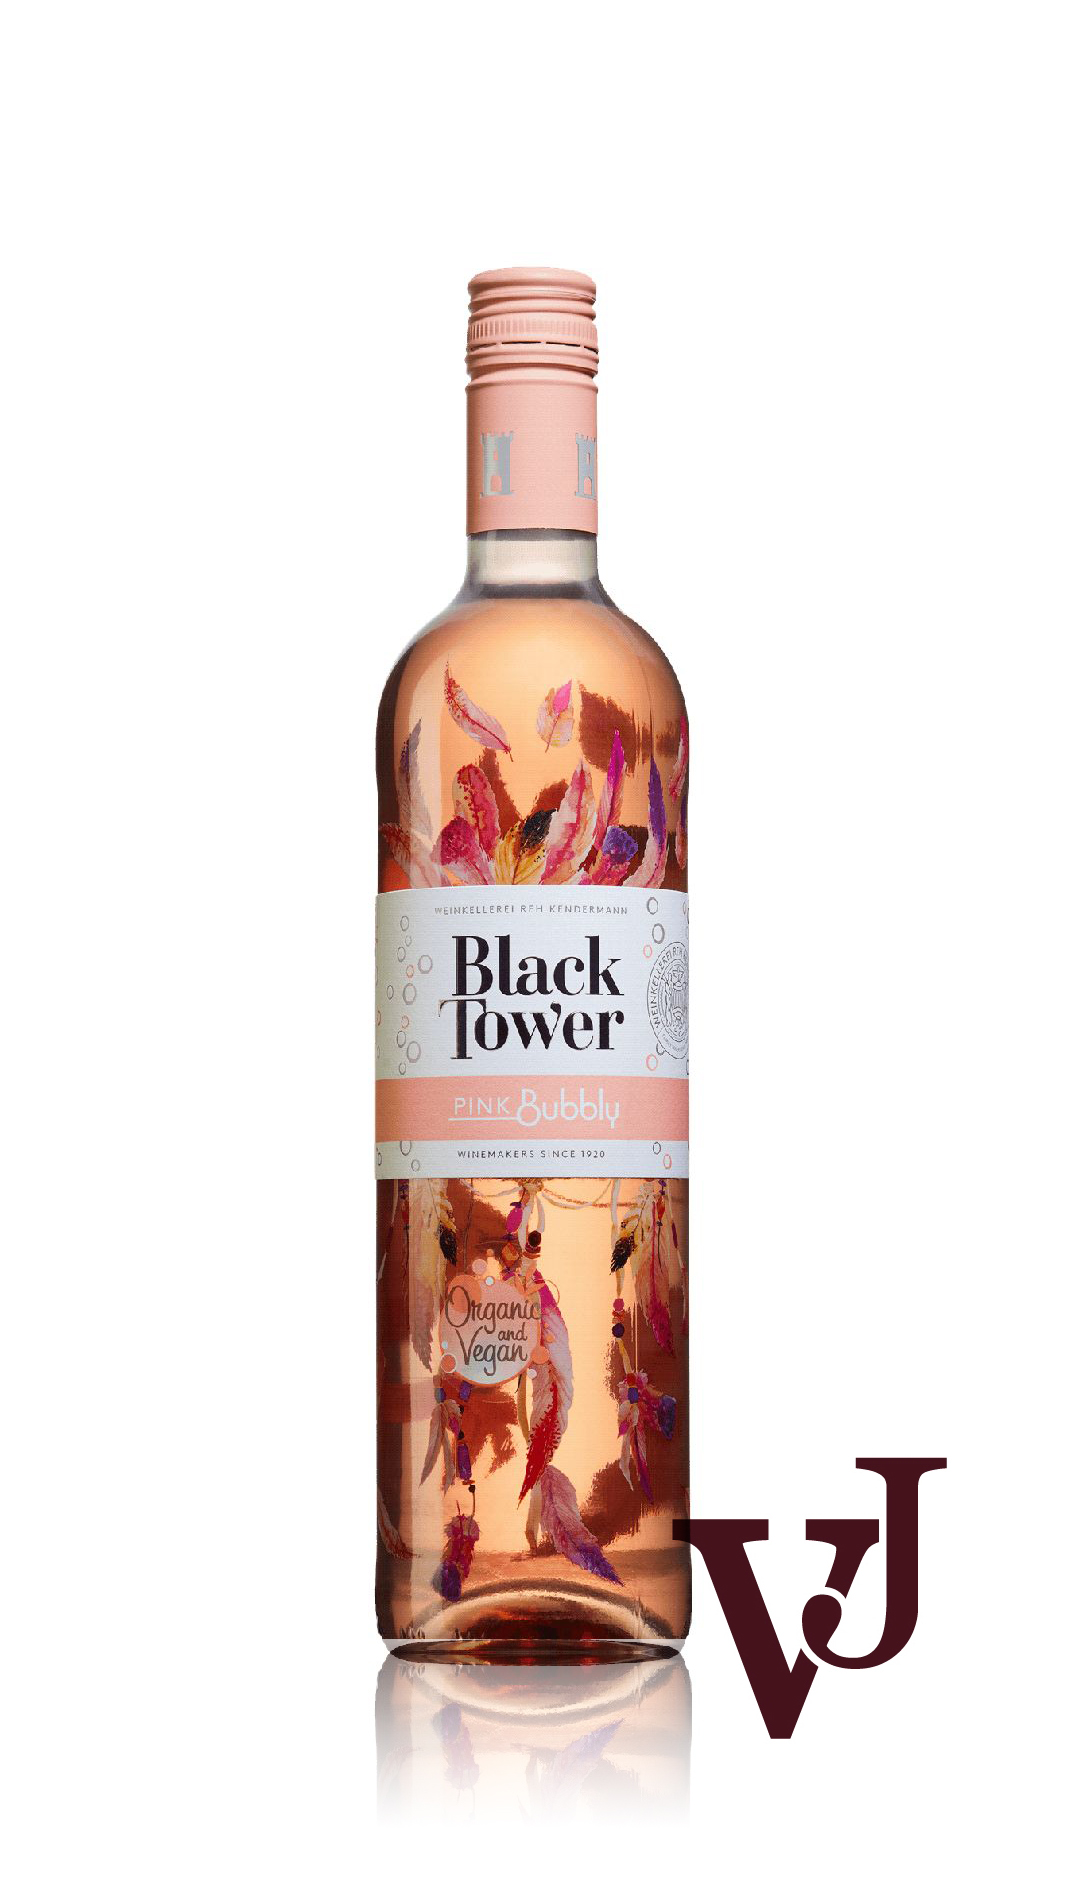 Rosévin - Black Tower Organic Pink Bubbly artikel nummer 650801 från producenten Reh Kendermann från EU.